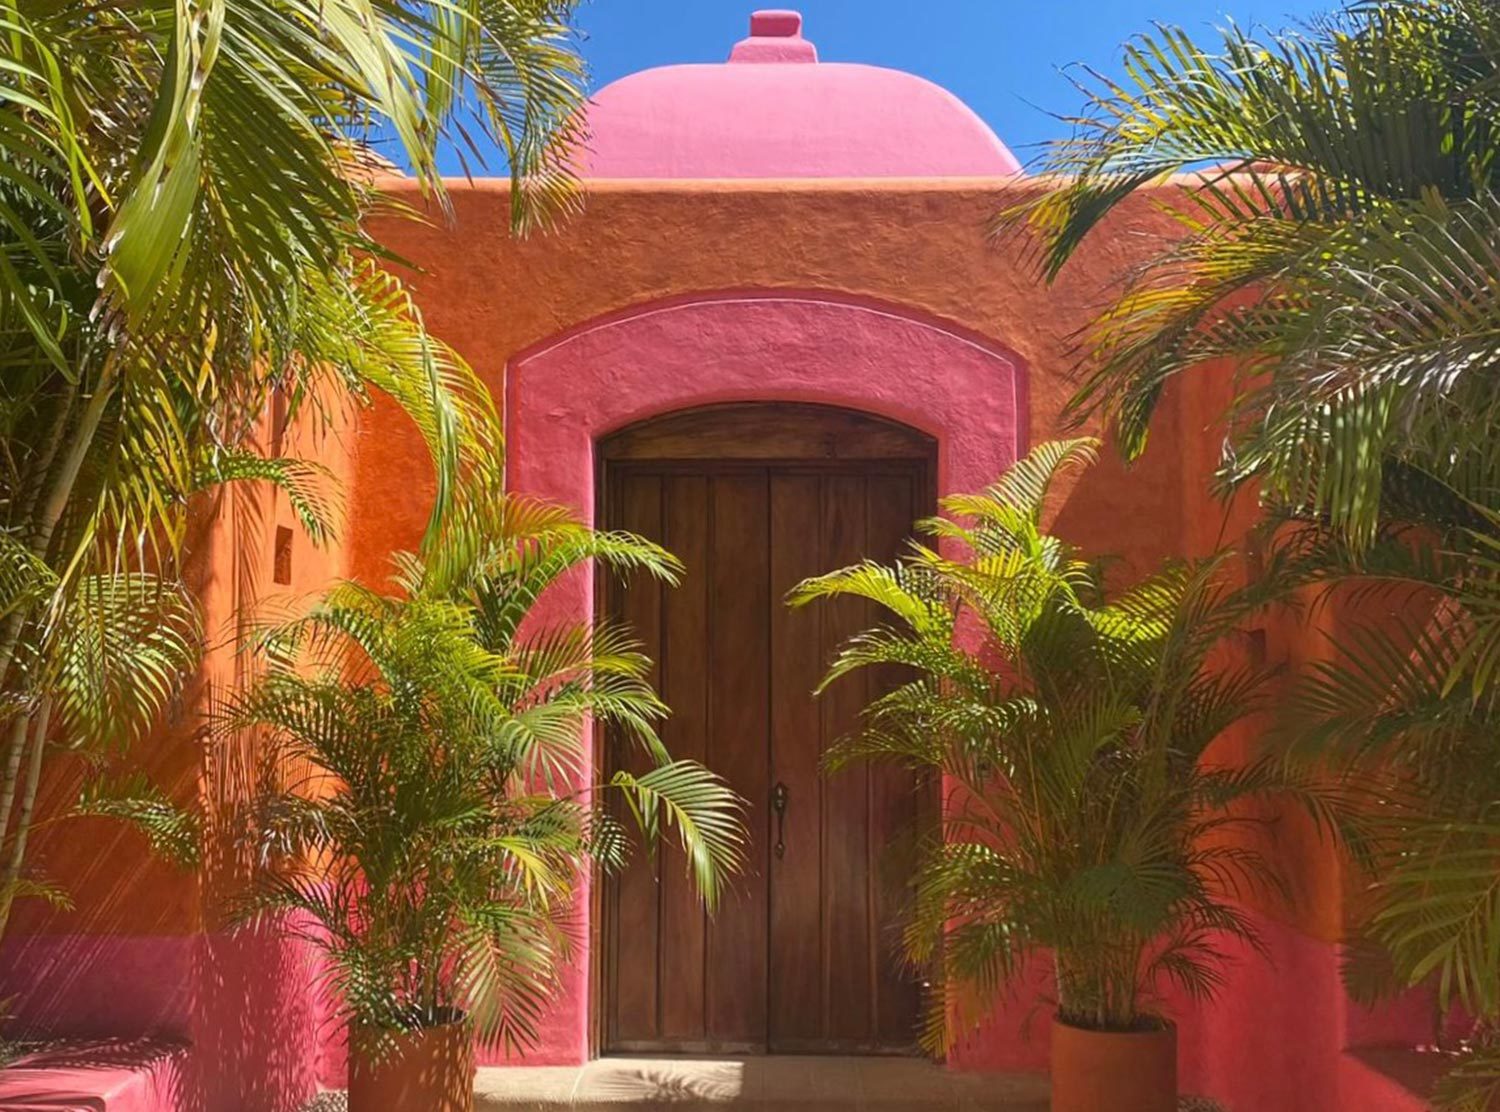 Las Alamandas The hotel's iconic pink dome, entrance to Casa del Domo